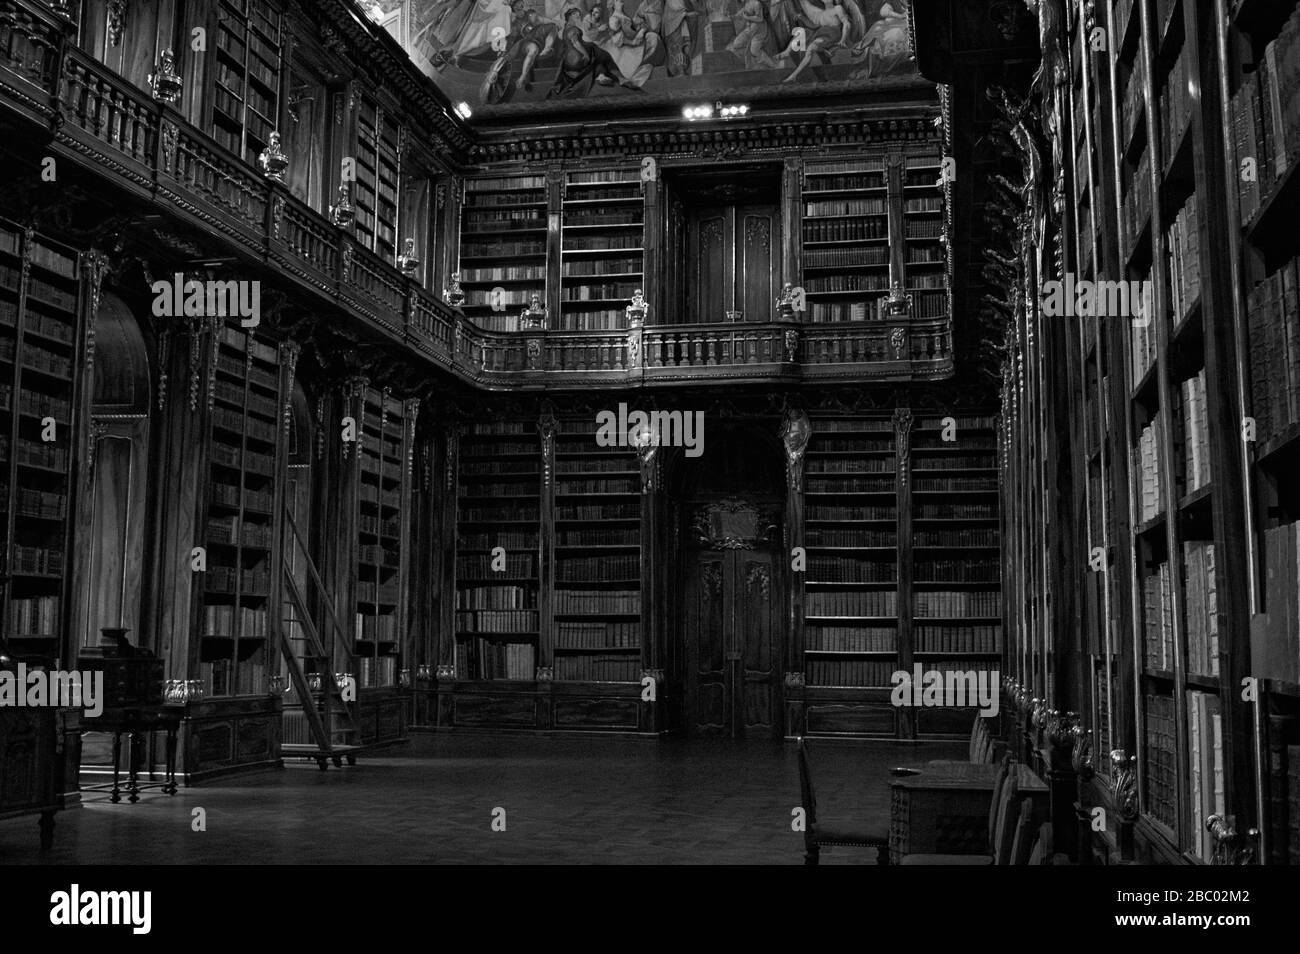 Praga, Repubblica Ceca - 30 dicembre 2019: Vecchia biblioteca con molti libri all'interno di scaffali decorati e un soffitto affrescato (sala filosofica, Straho Foto Stock